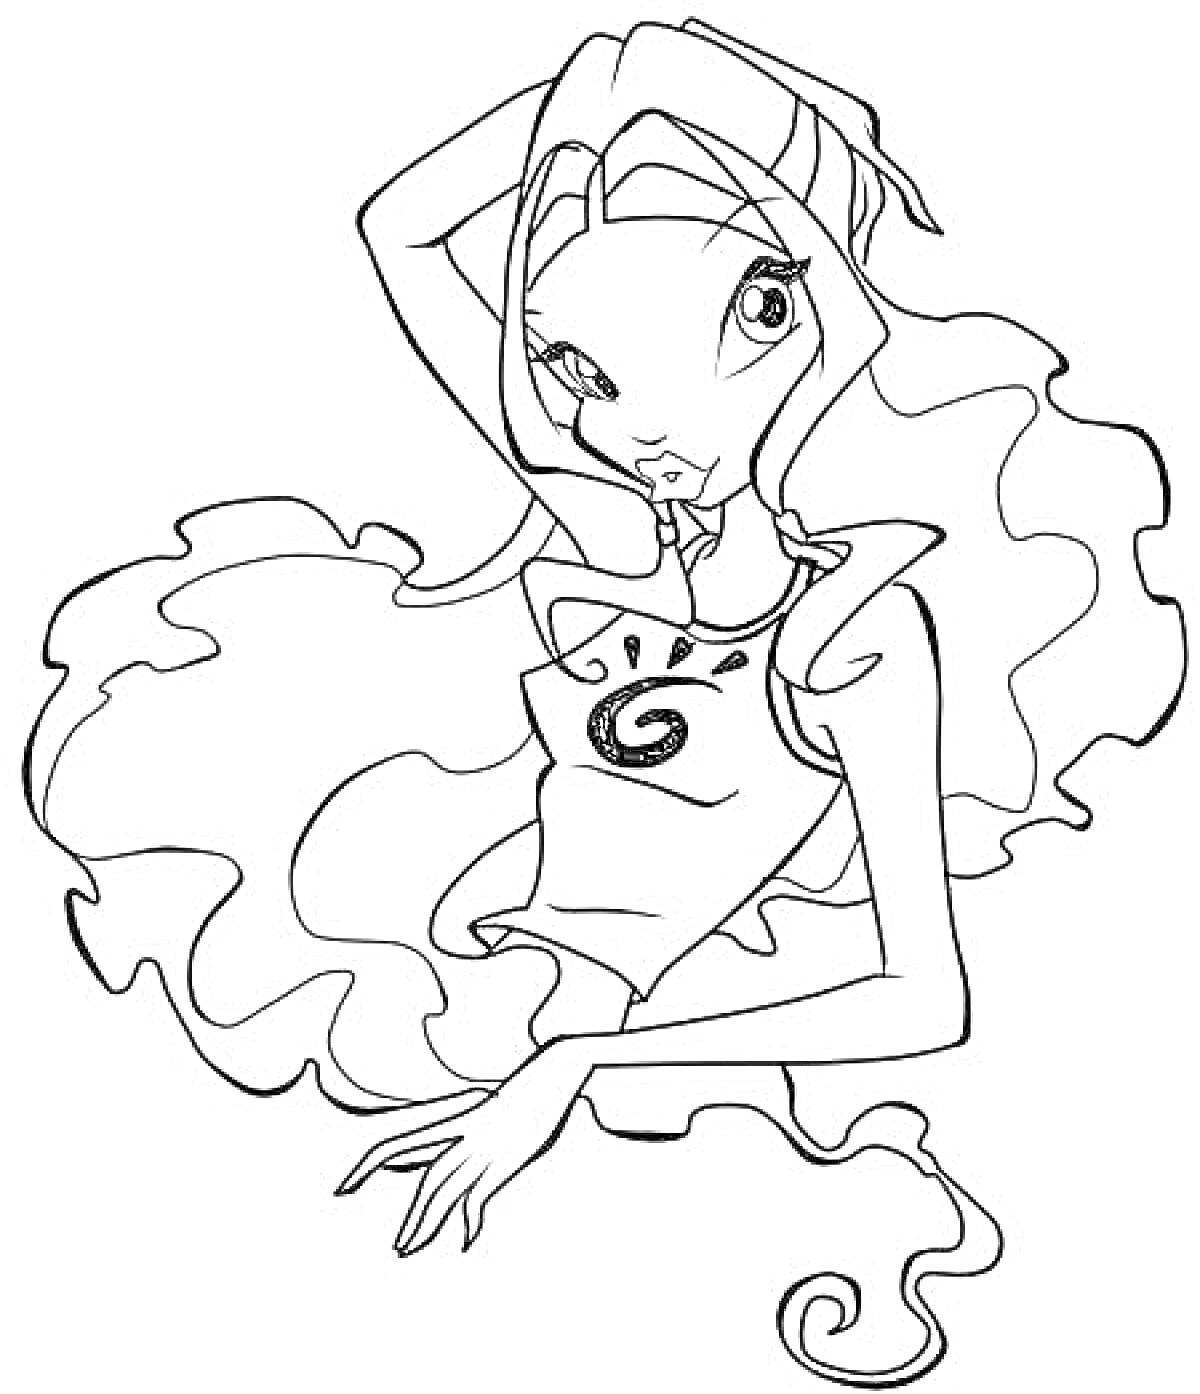 Раскраска Лейла Винкс с длинными волнистыми волосами, в топе с узором, с поднятой рукой